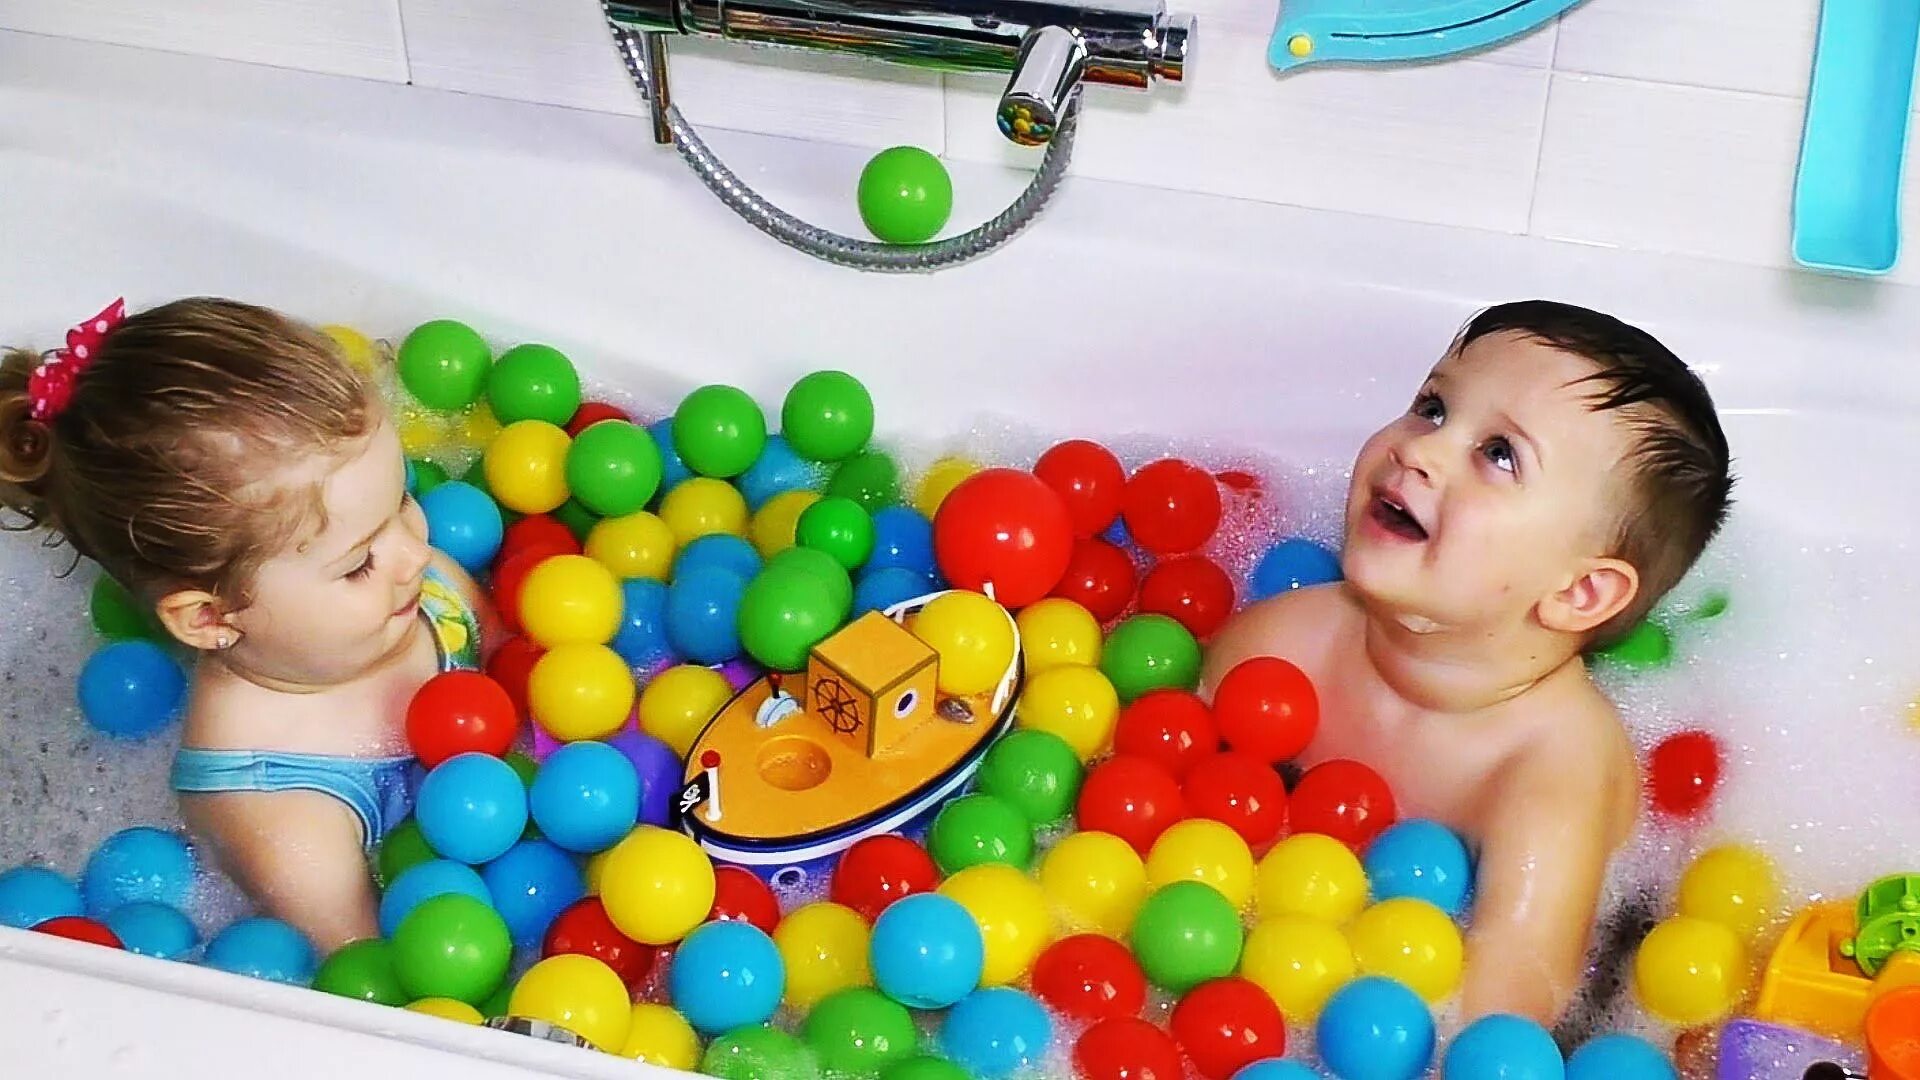 1 развлечения. Игрушка для ванны. Игрушки для купания малышей. Развлечение в ванной для детей. Шарики для купания в ванной для детей.